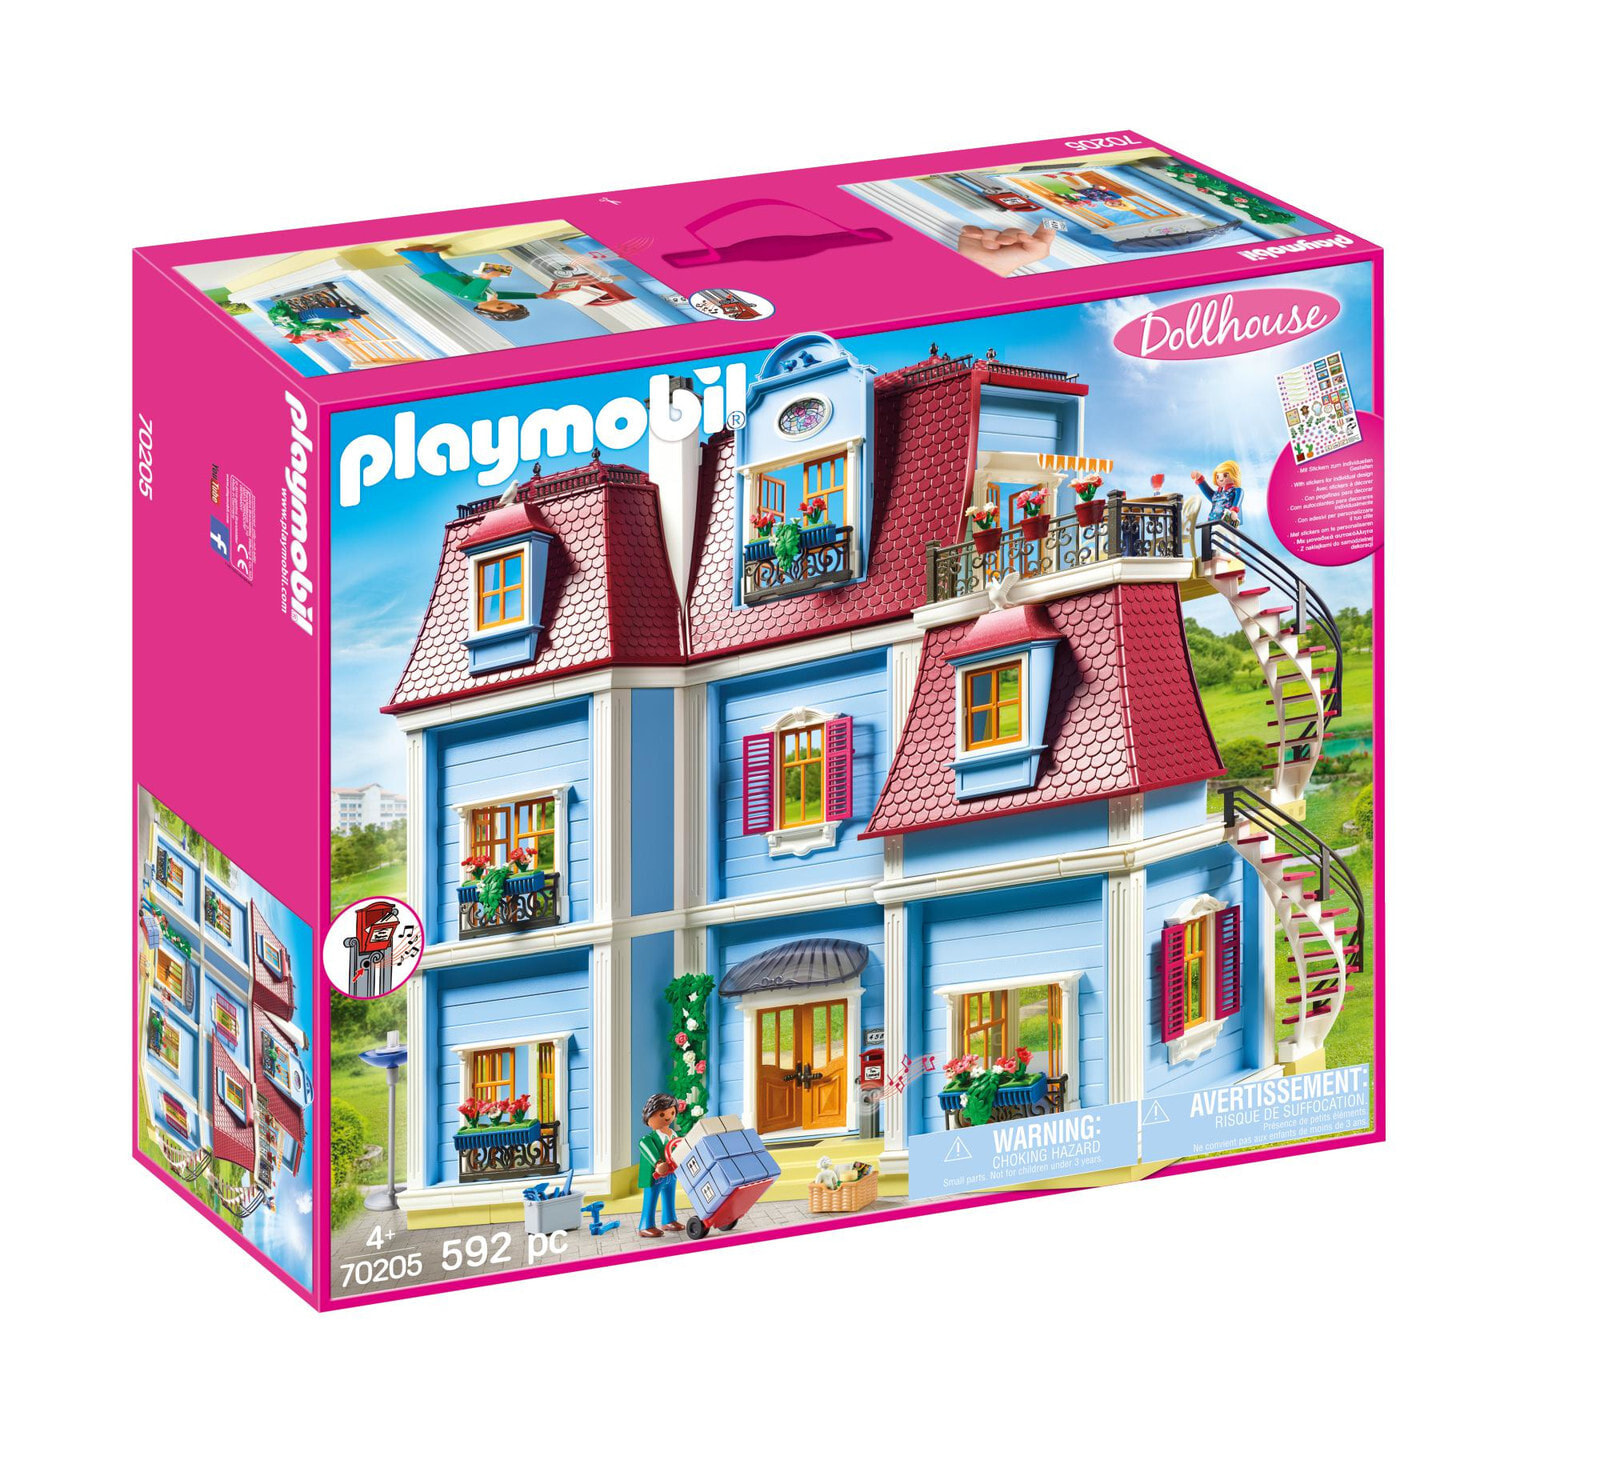 Набор с элементами конструктора Playmobil Dollhouse 70205 Большой кукольный дом